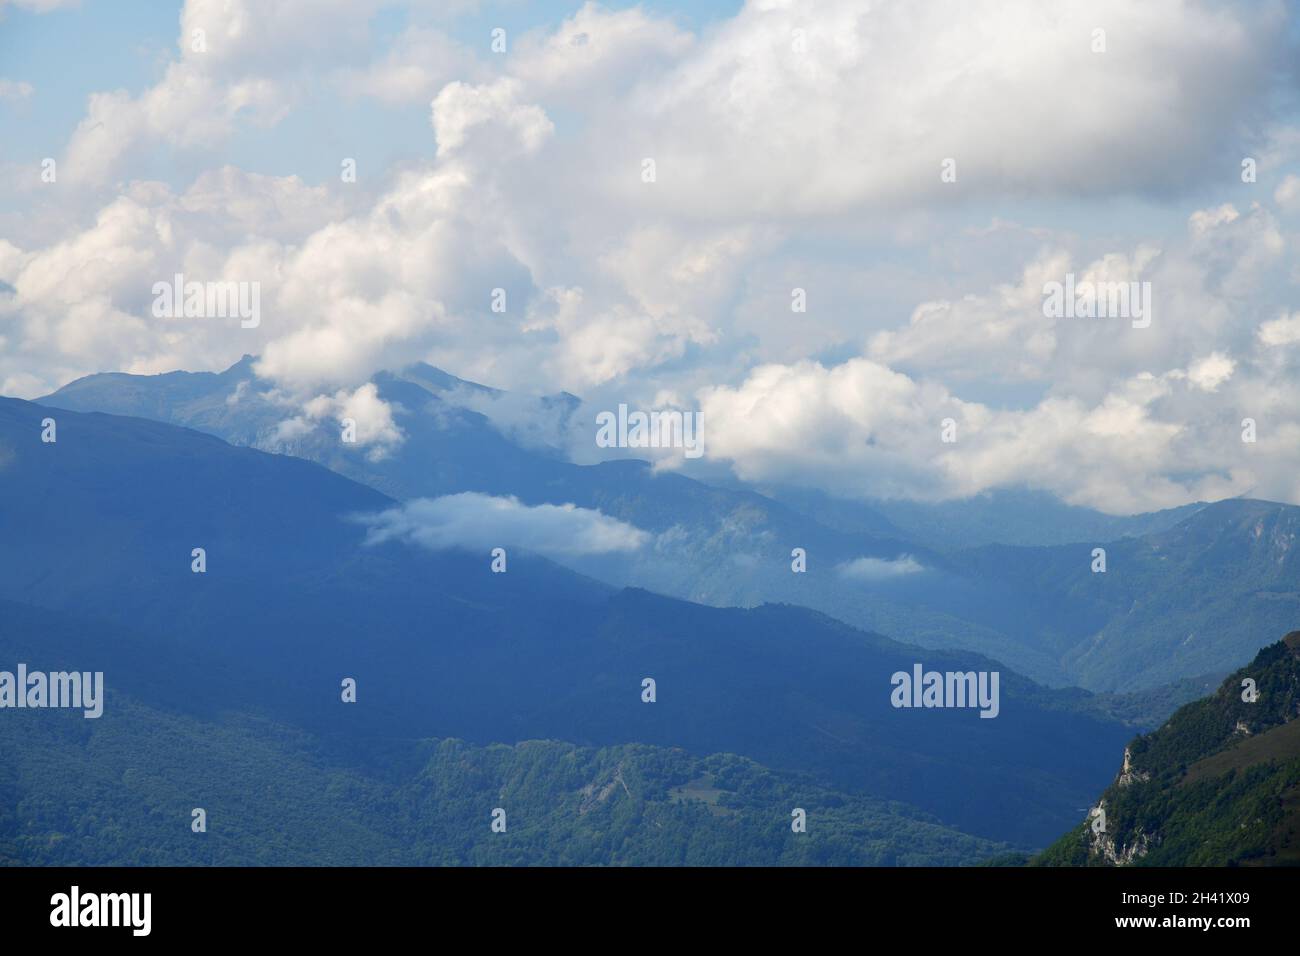 Caucasus mountains landscape in Chechnya, Russia. Vedeno district of the Chechen Republic Stock Photo